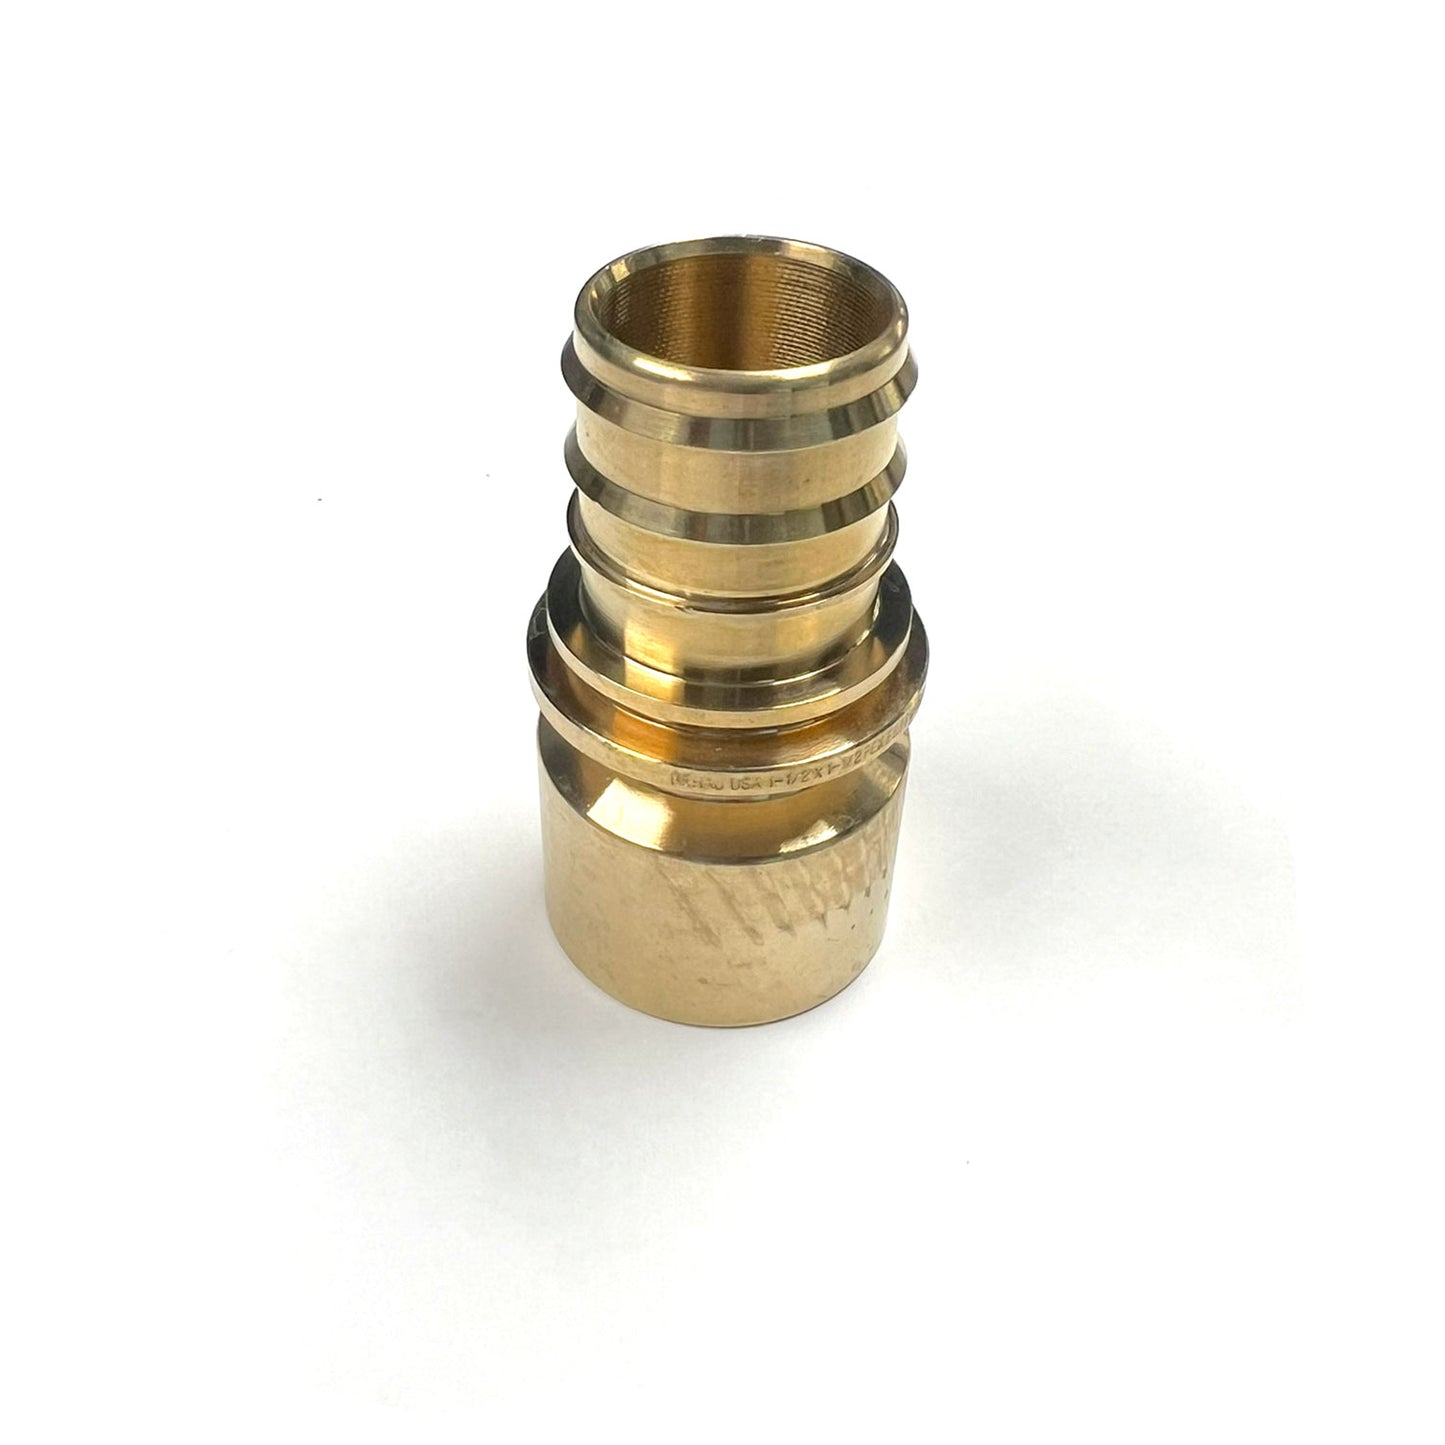 317195-001 - 1-1/2" x 1-1/2" C Female EVERLOC+ LF Brass Copper Adapter